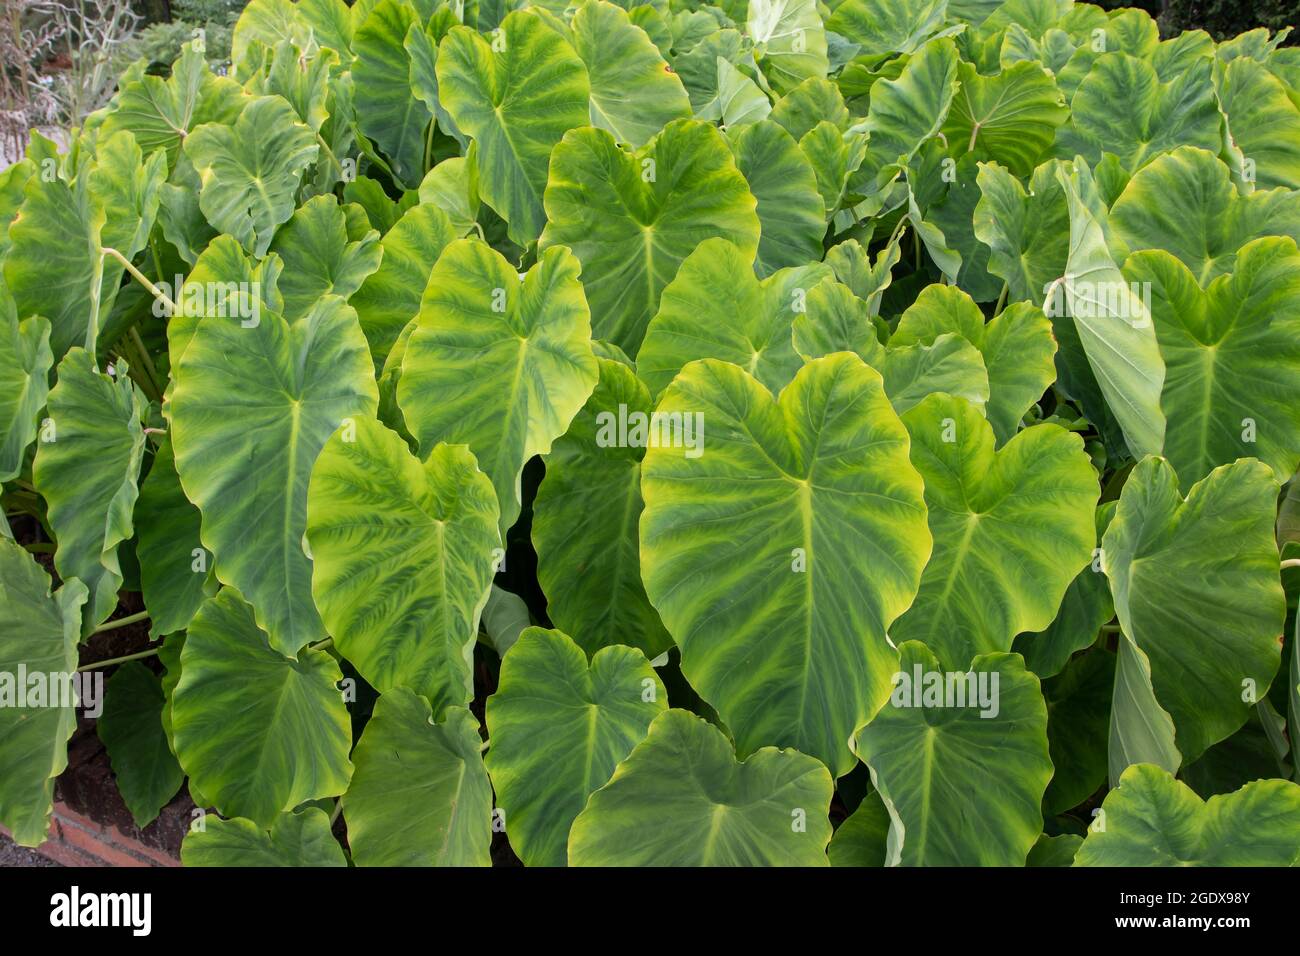 Colocasia esculenta leaves. Taro or kalo edible plants in the vegetable garden. Stock Photo